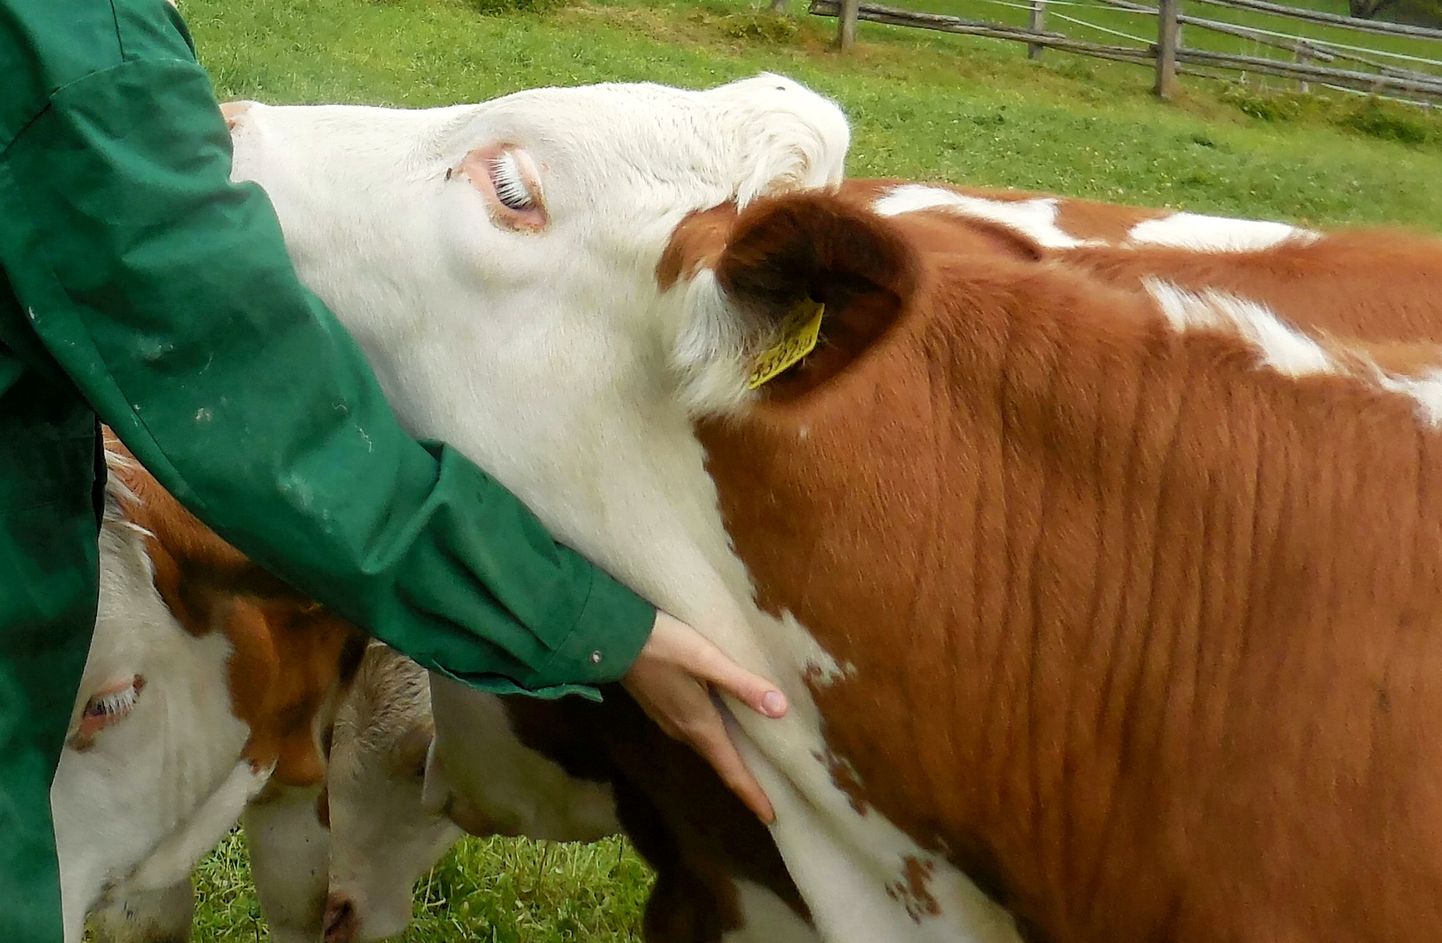 Uuringust selgus, et lehmad naudivad enim paitamise ja vaiksel häälel kõnelemise kombinatsiooni. Lõdvestunud olles ja suhtlemist nautides sirutavad loomad sageli oma kaela välja.